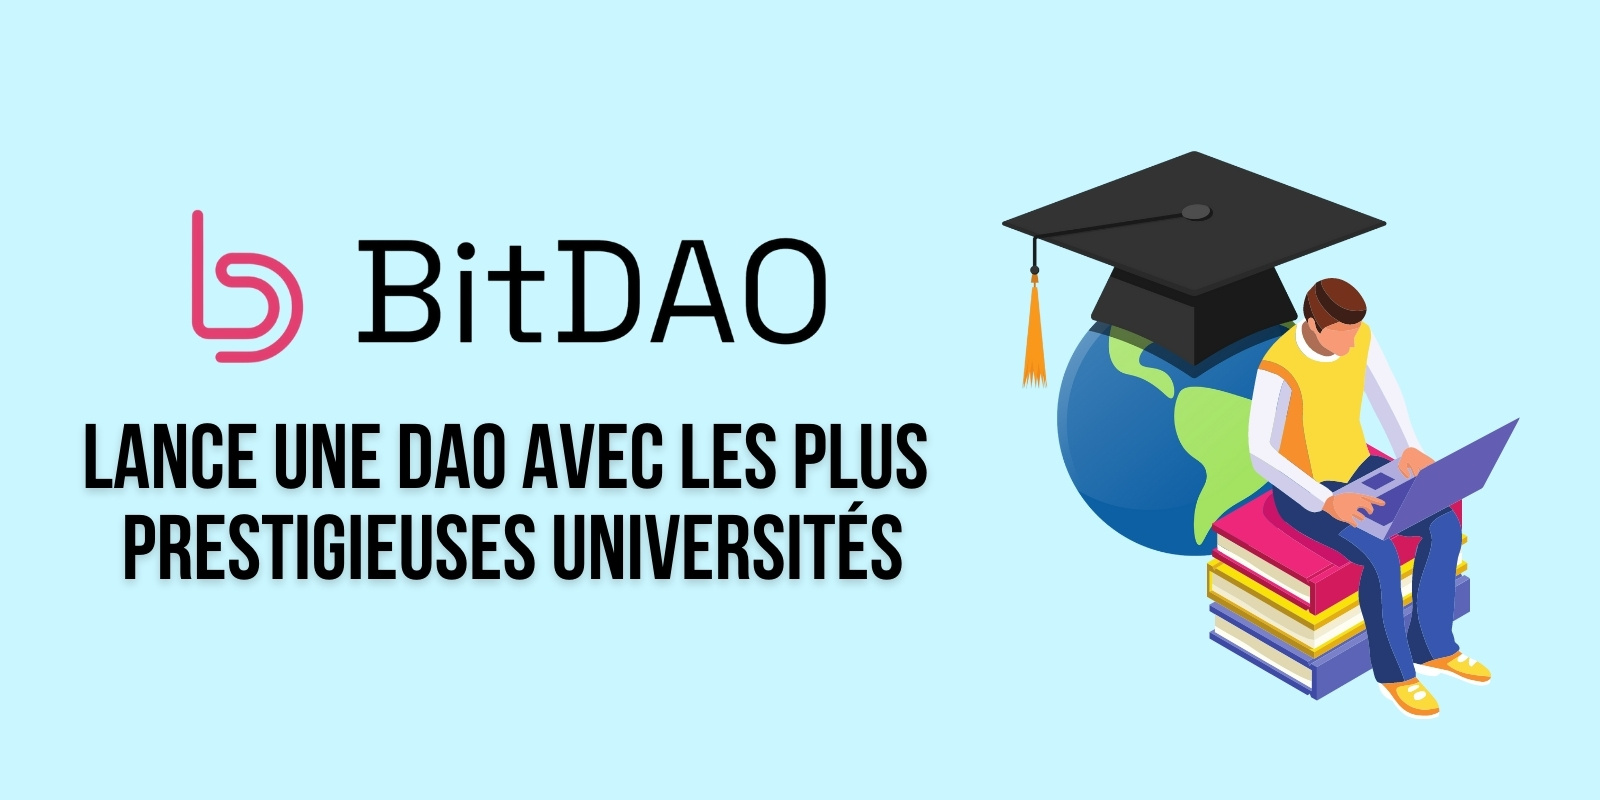 BitDAO forme une DAO avec le MIT, Harvard, Oxford et d